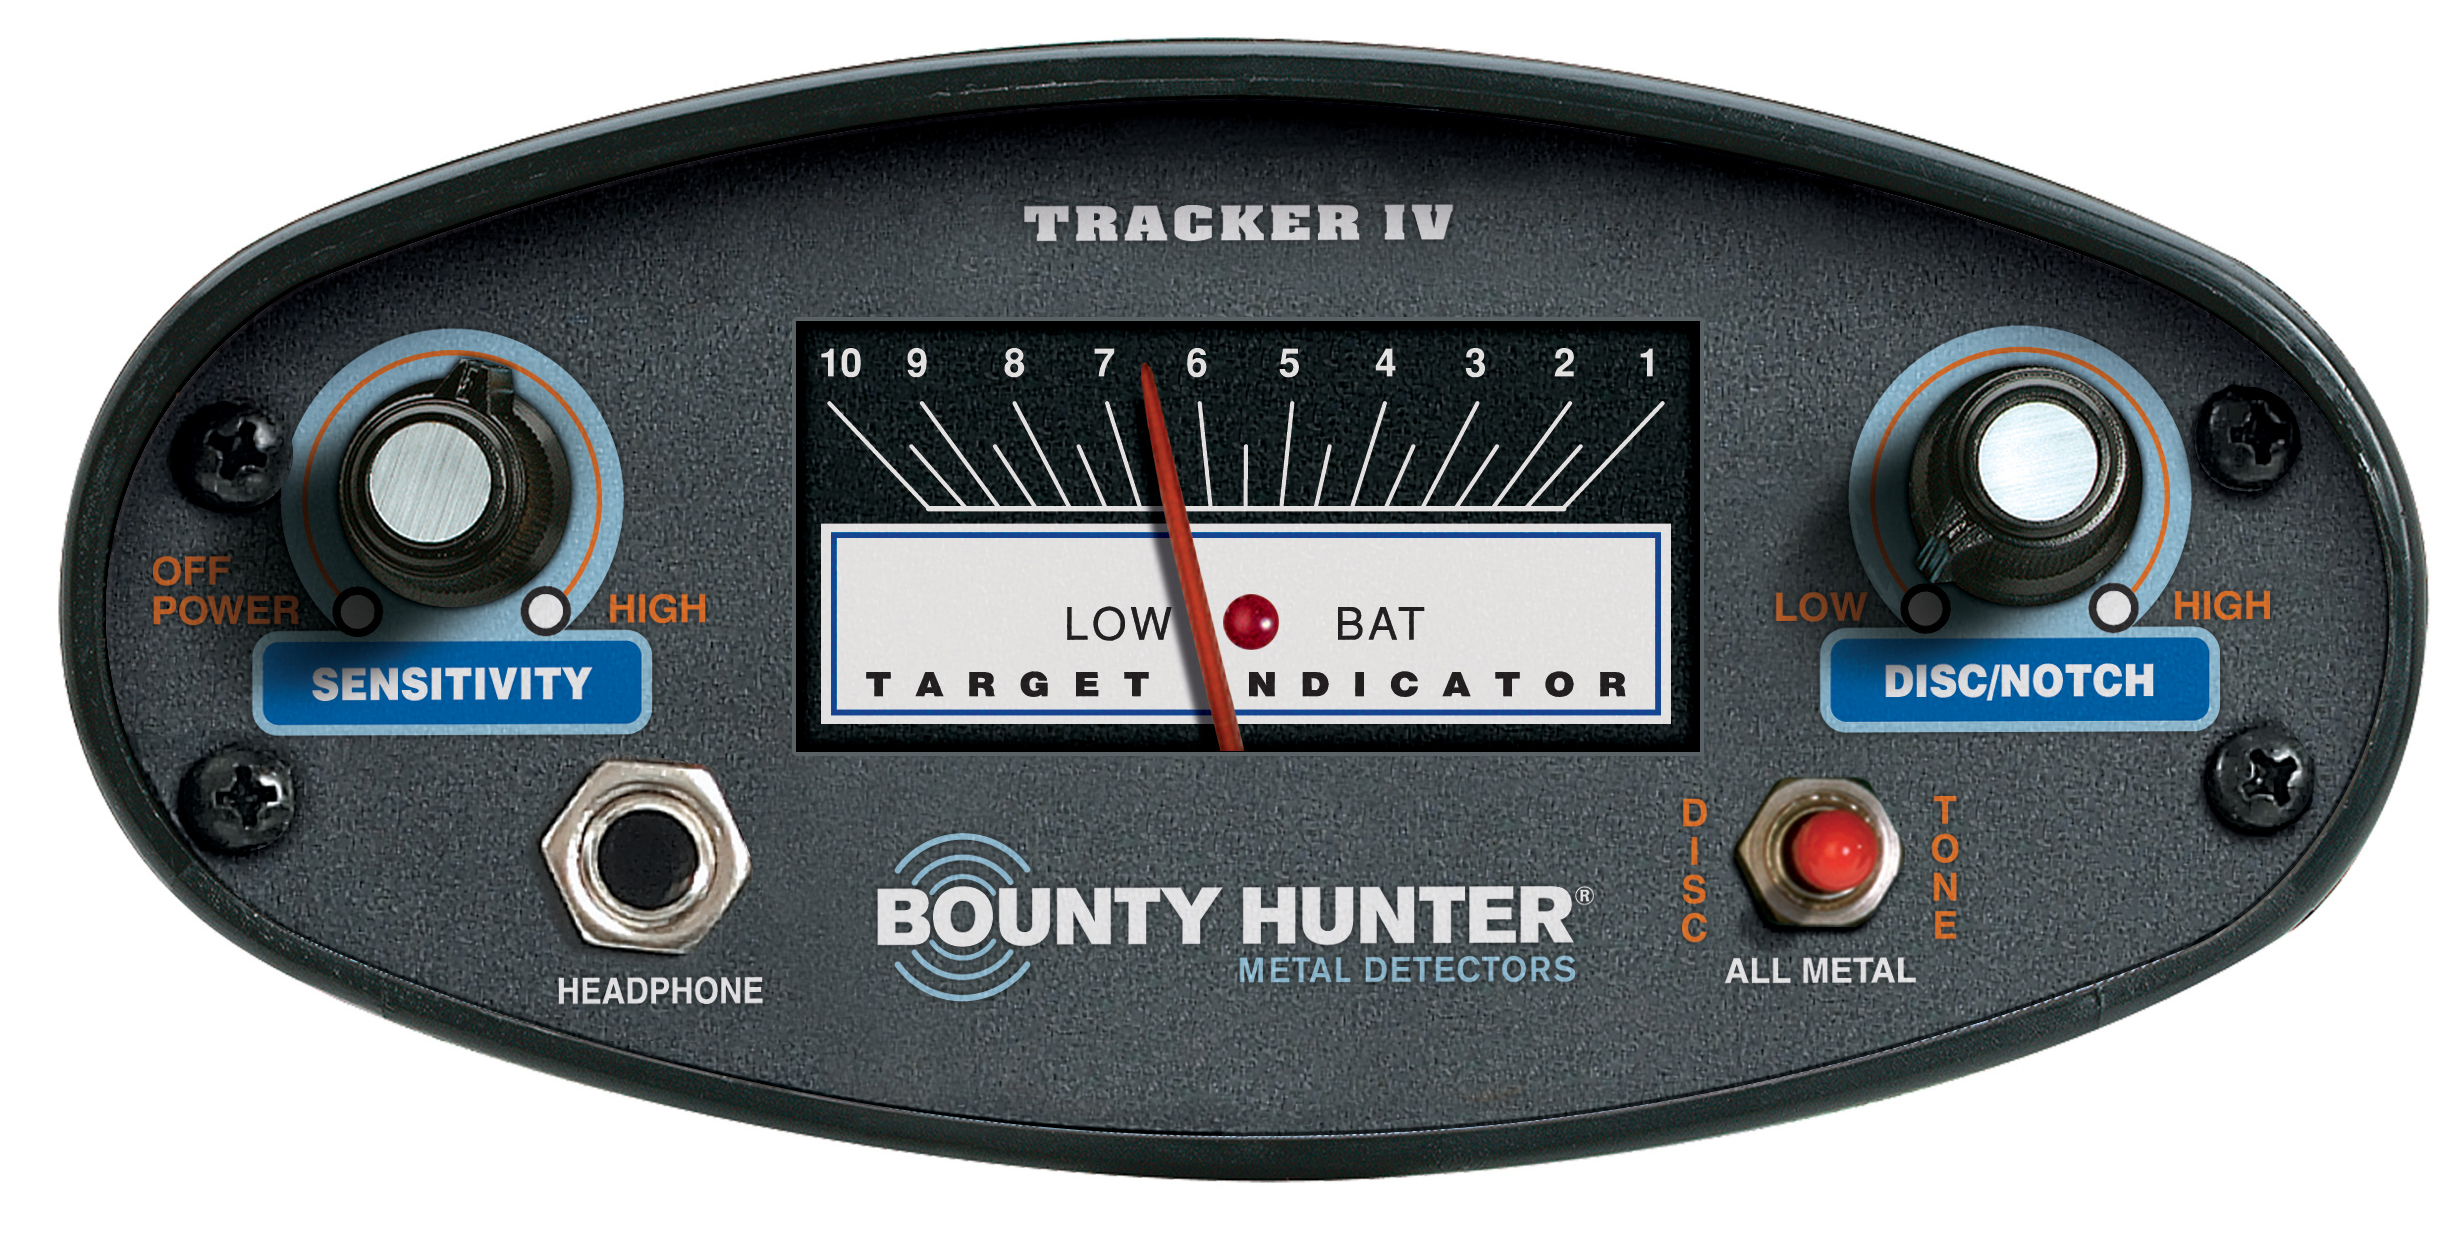 BOUNTY HUNTER Tracker IV Metalldetektor